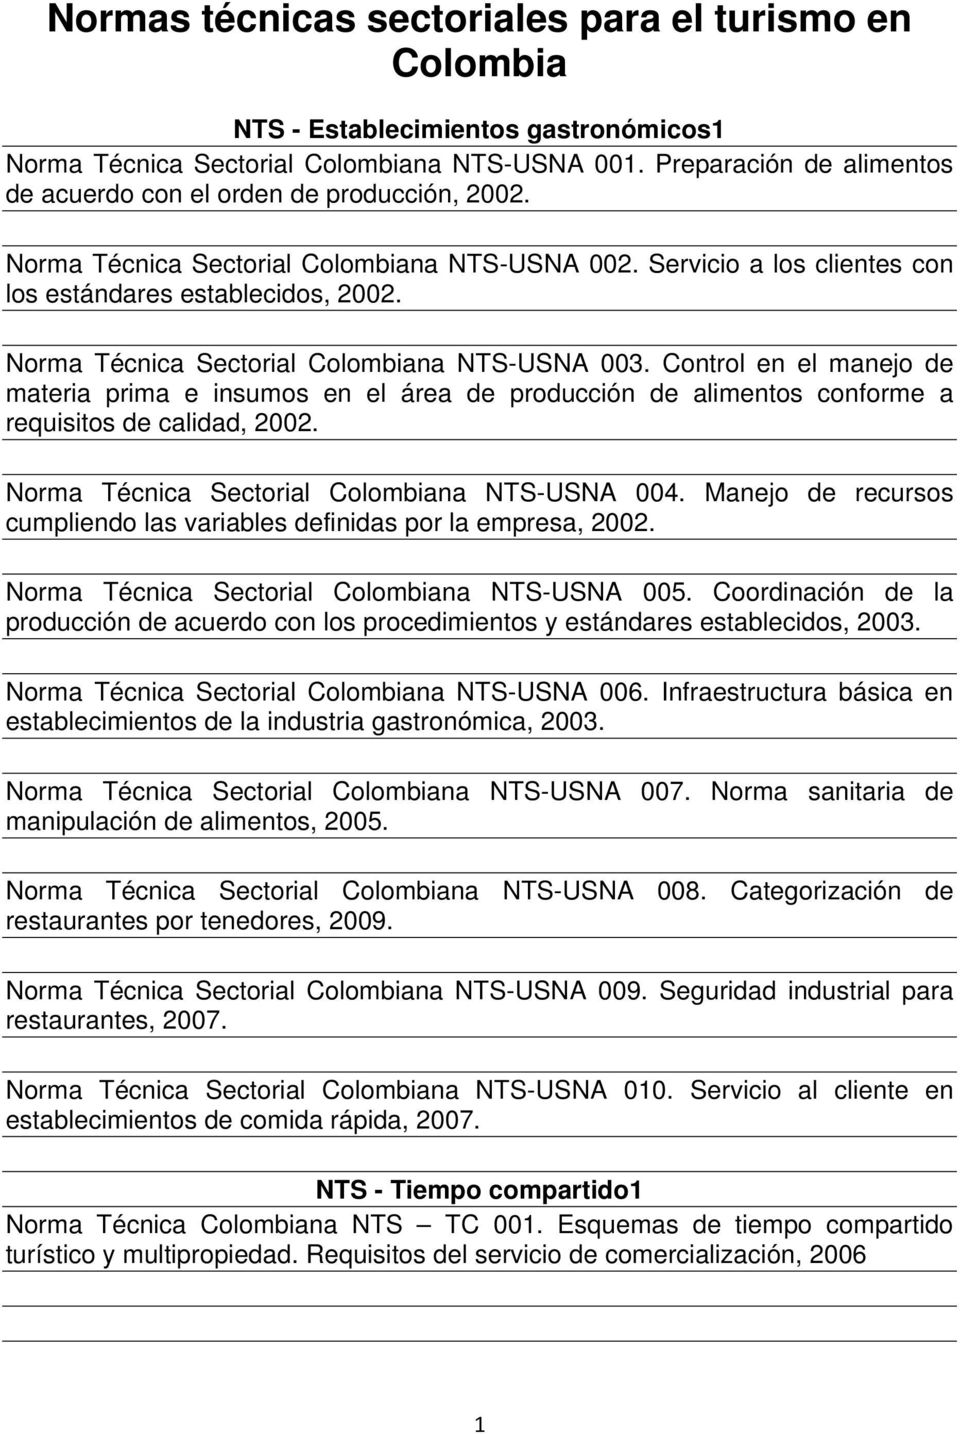 Norma Técnica Sectorial Colombiana NTS-USNA 003. Control en el manejo de materia prima e insumos en el área de producción de alimentos conforme a requisitos de calidad, 2002.